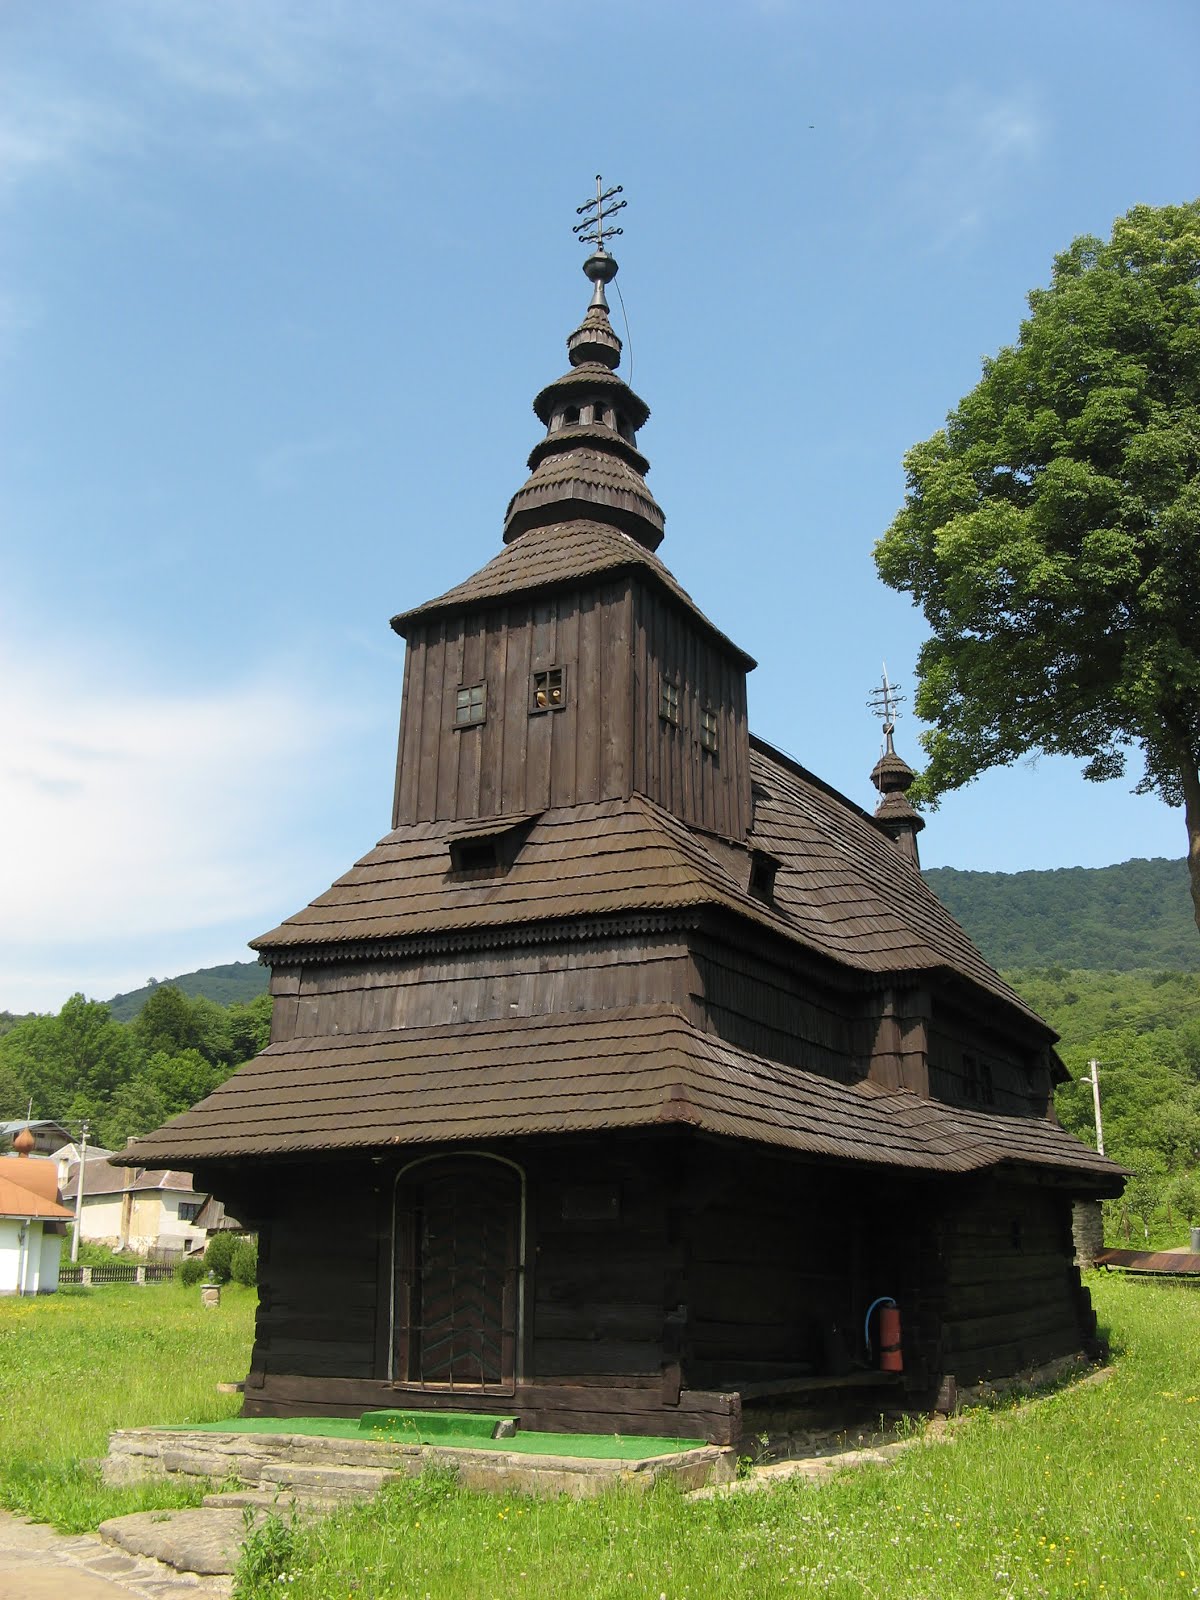 Wooden church. Словакия деревянные церкви. Карпаты деревянные церкви. Словакия деревянная архитектура. Православные церкви в Словакии.